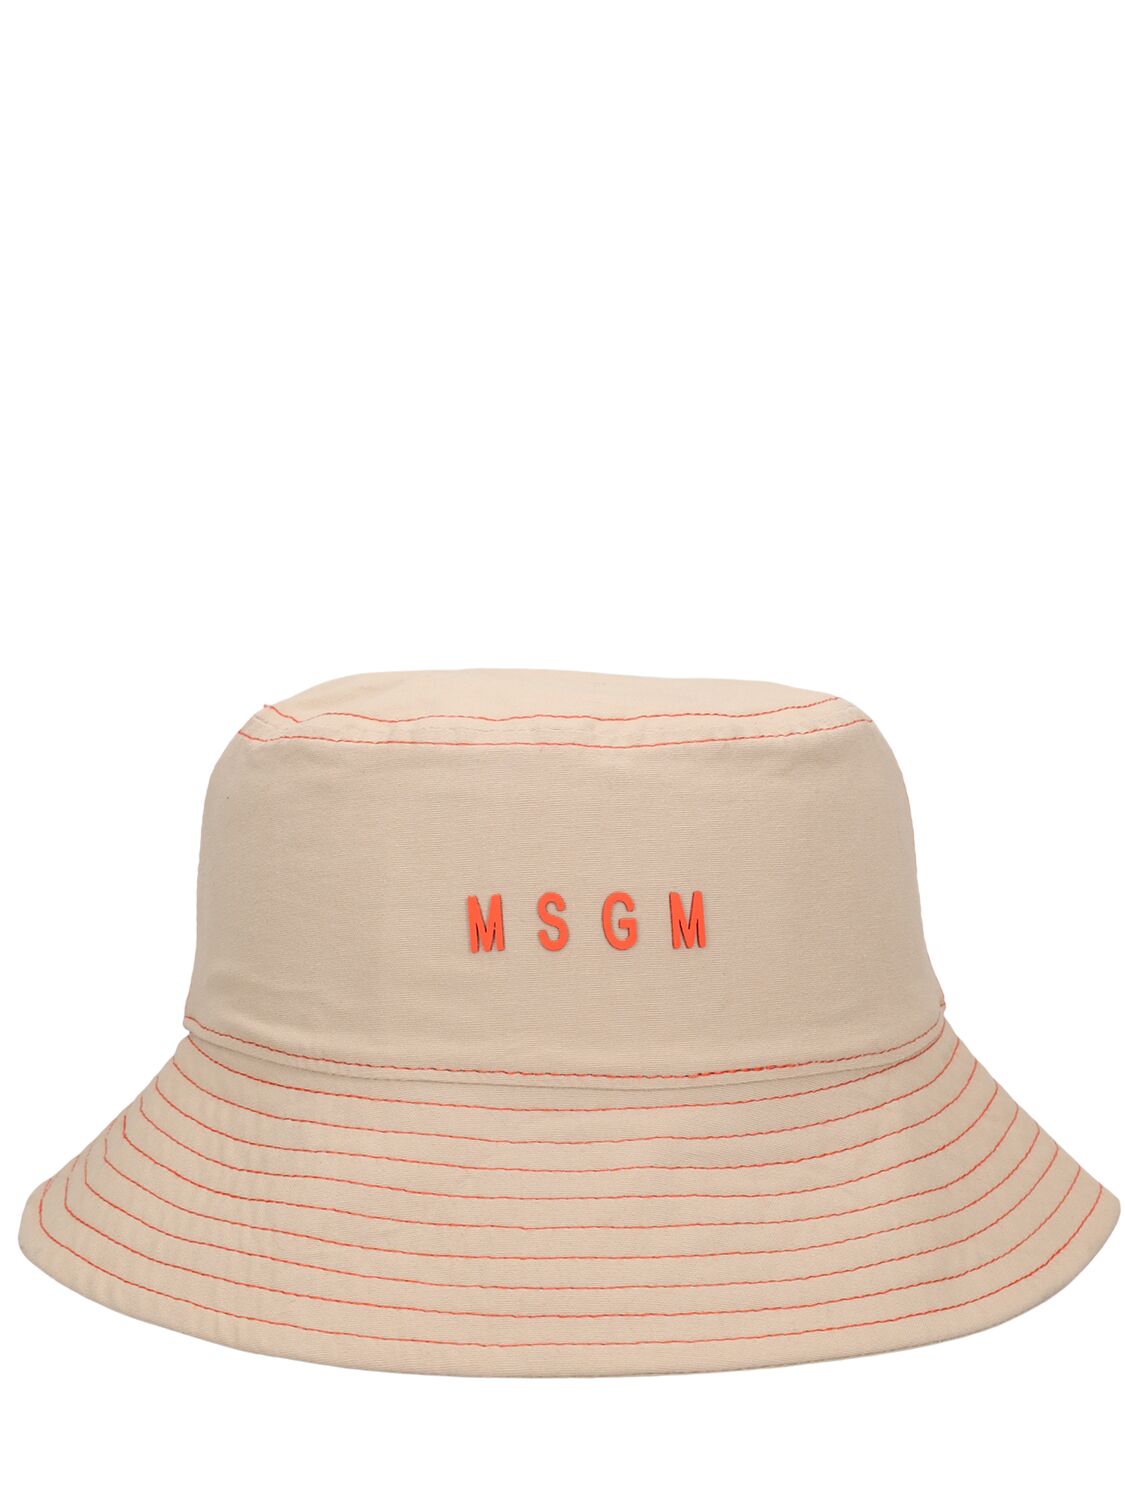 Msgm Kids' Cotton Bucket Hat In Beige